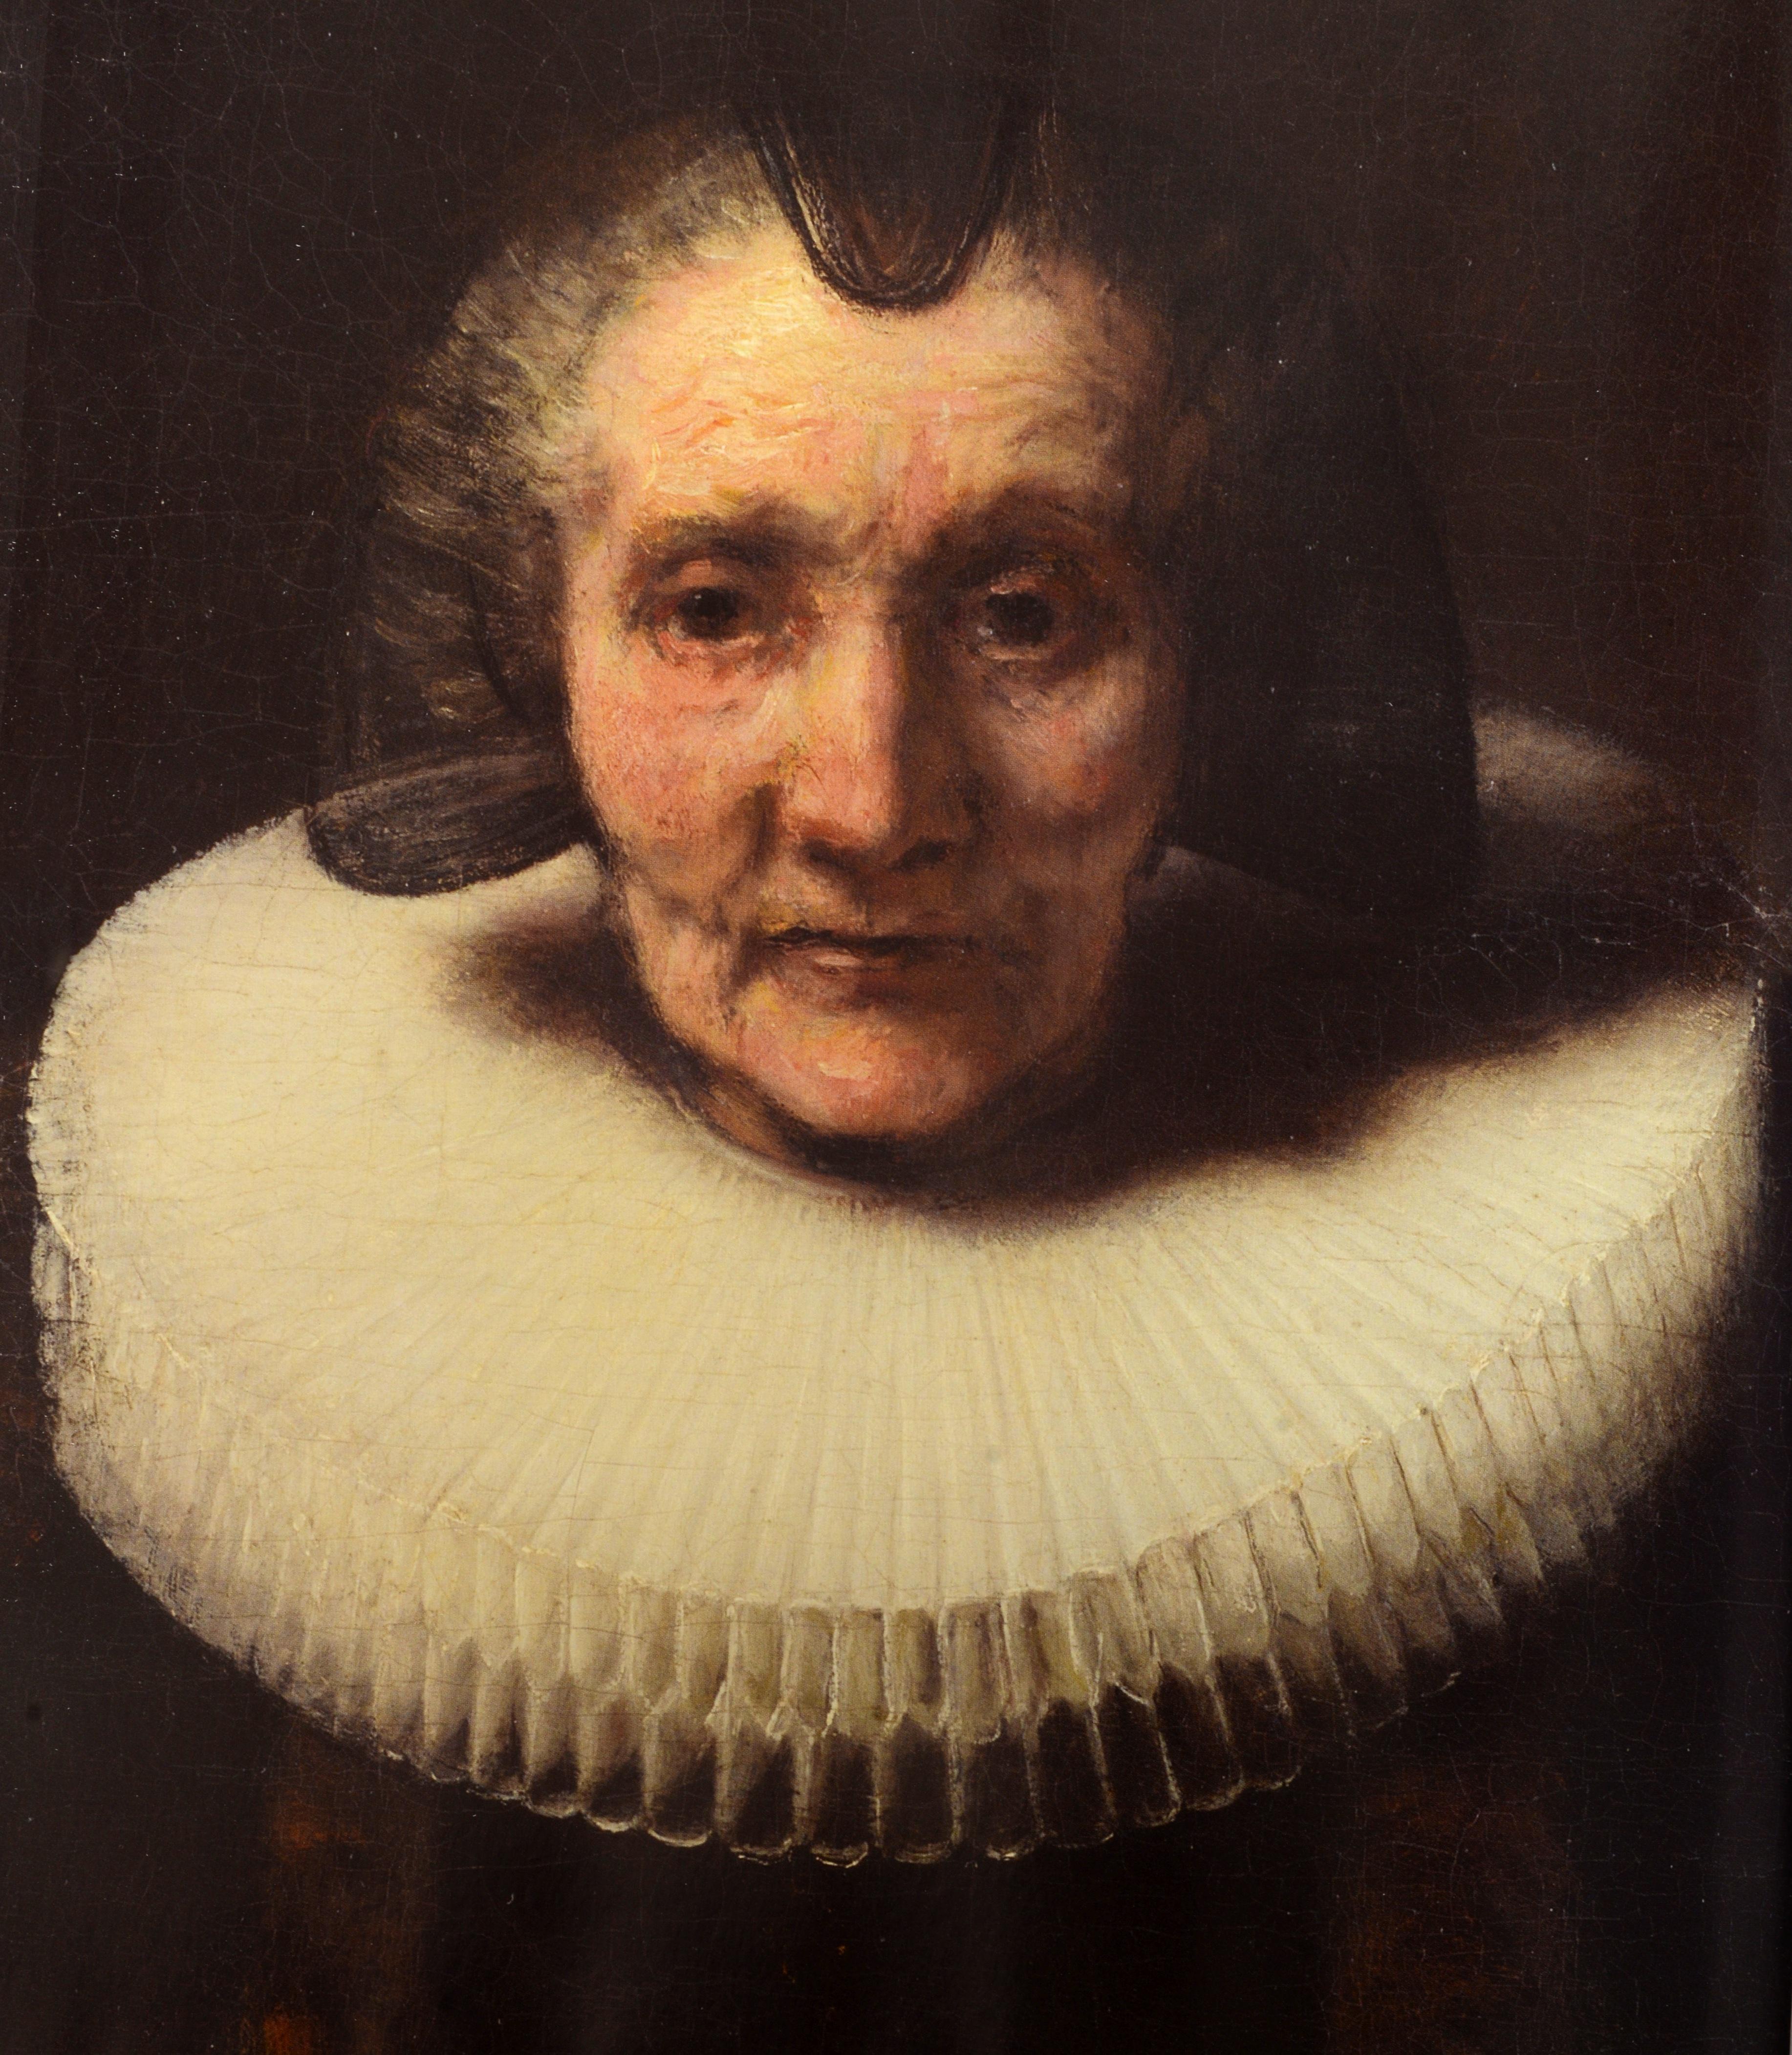 Der späte Rembrandt von Jonathan Bikker. Veröffentlicht von Rijksmuseum Amsterdam, 2014. 1. englische Ausgabe mit Schutzumschlag. Die Stadt Amsterdam feiert ihren berühmtesten Künstler mit 40 Gemälden, 20 Zeichnungen und 30 Drucken. Der späte